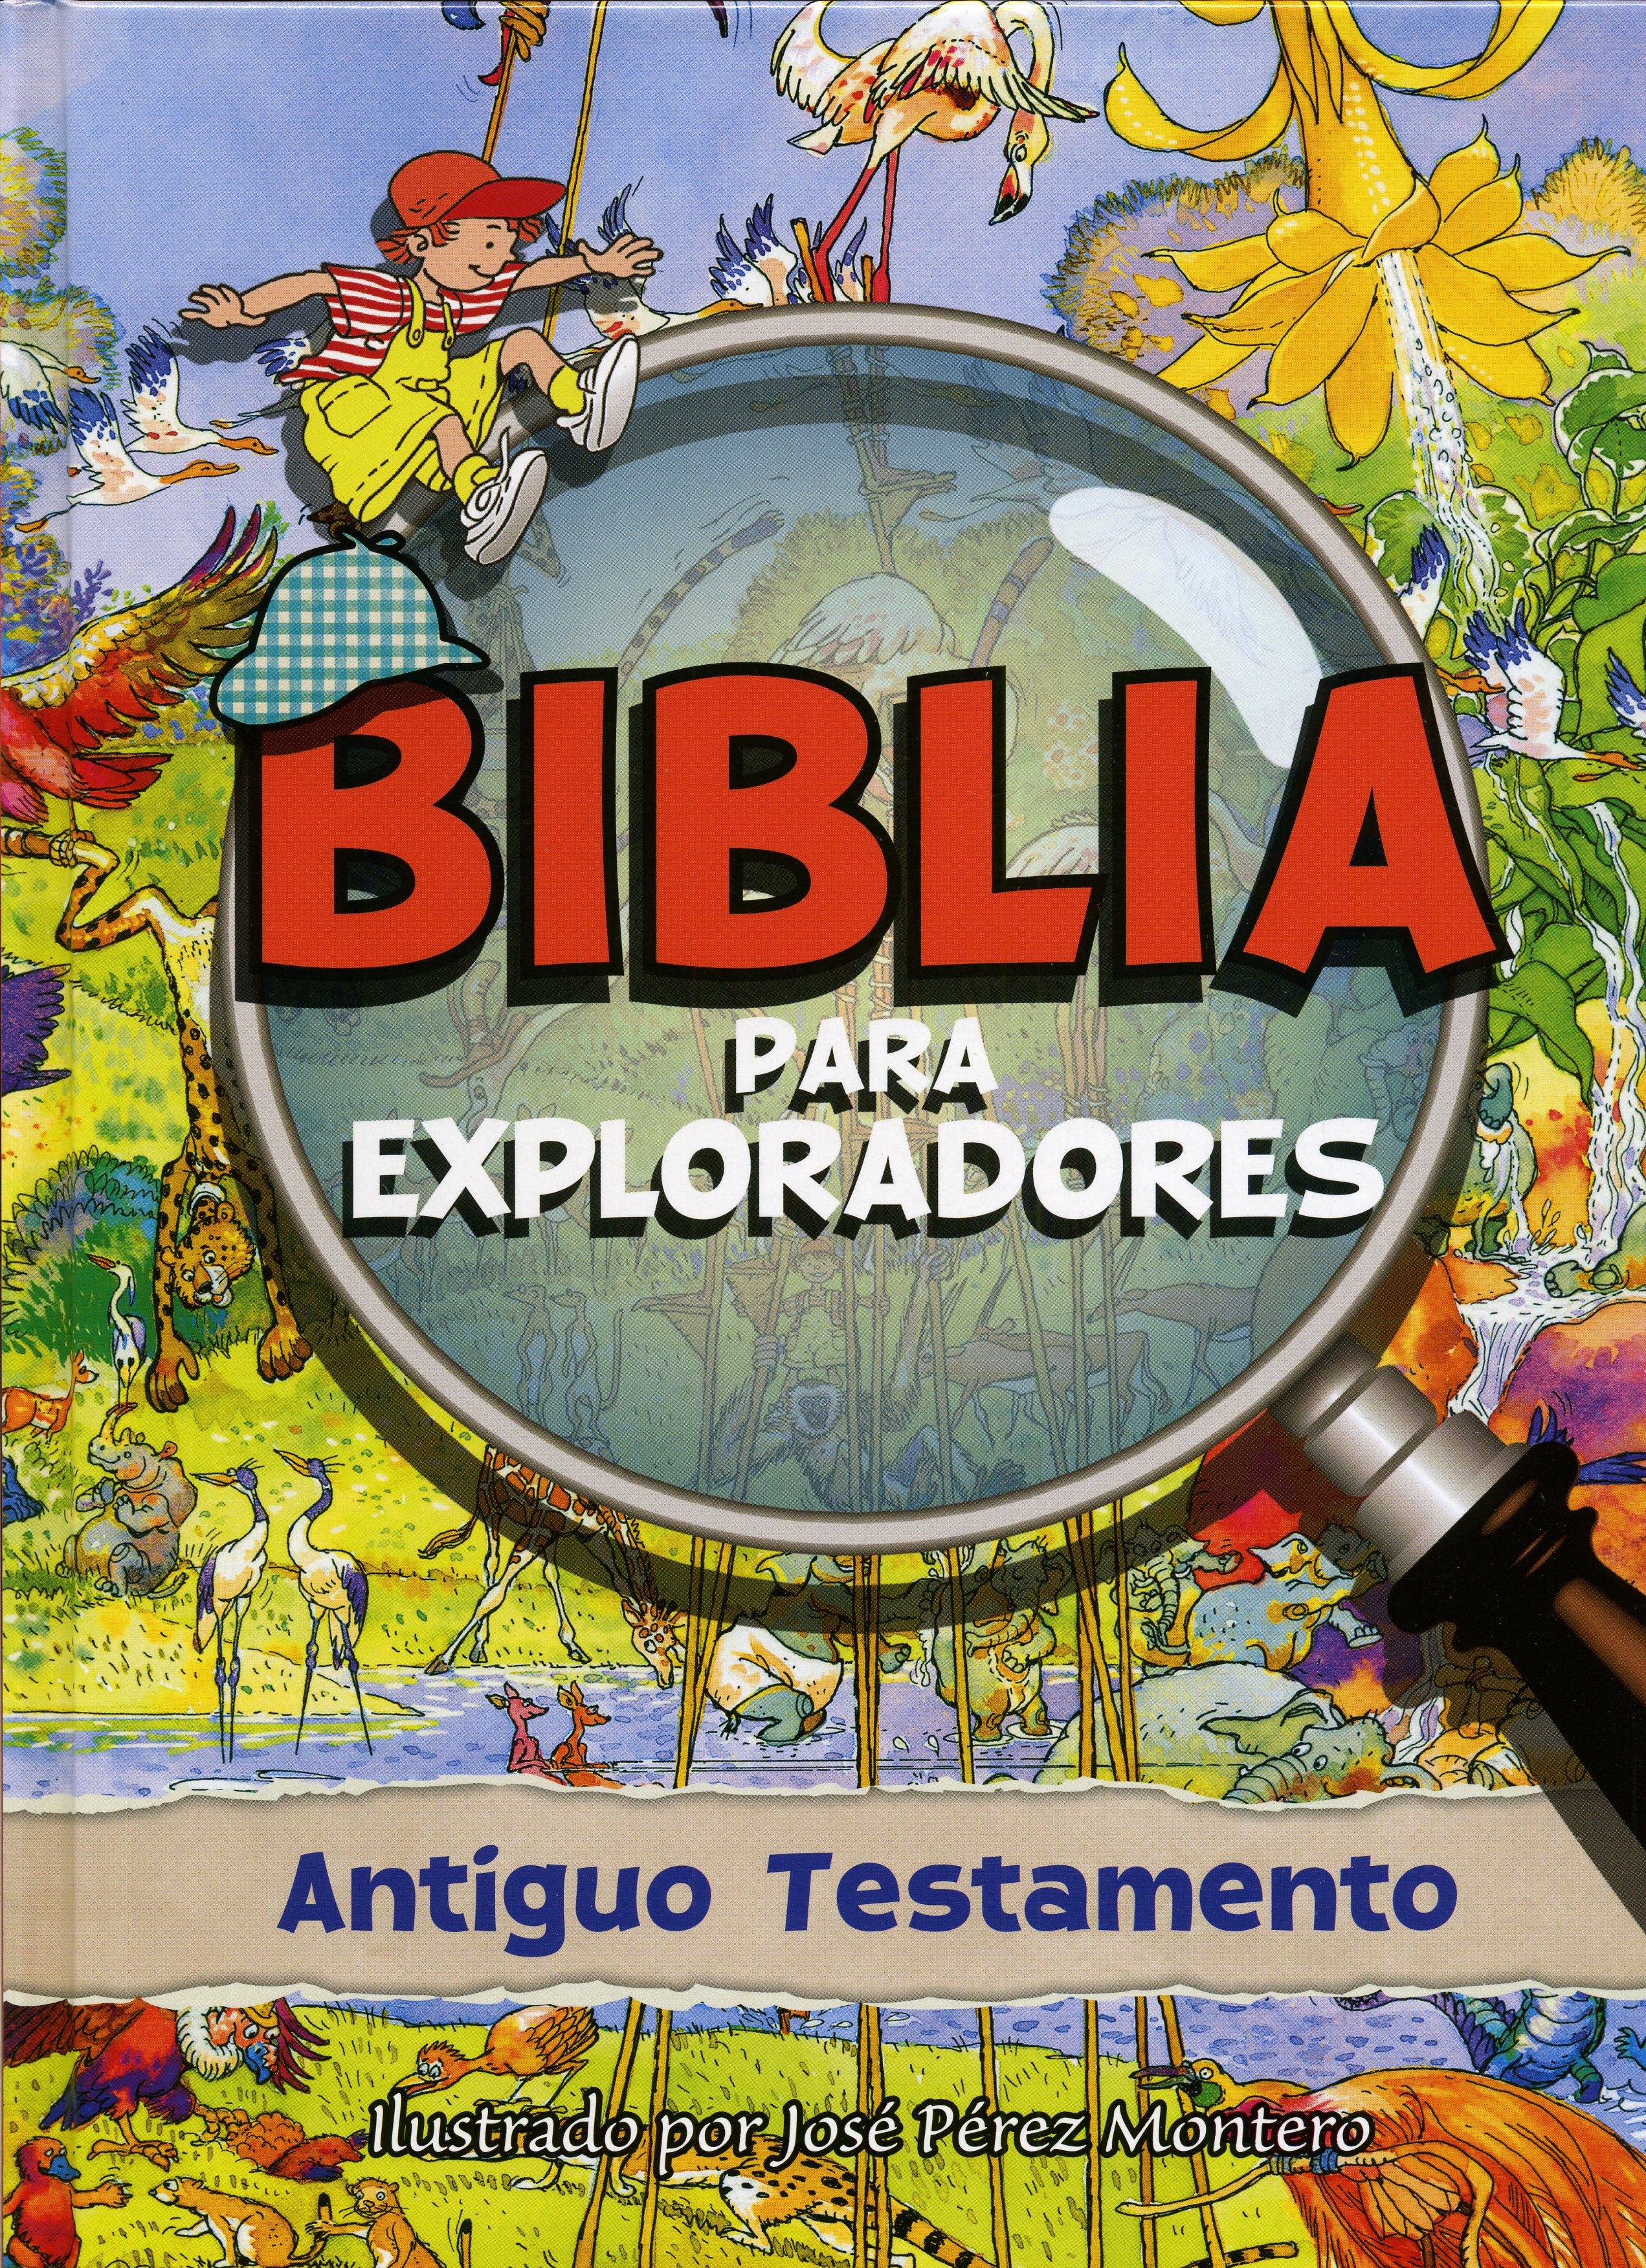 BIBLIA PARA EXPLORADORES AT TD